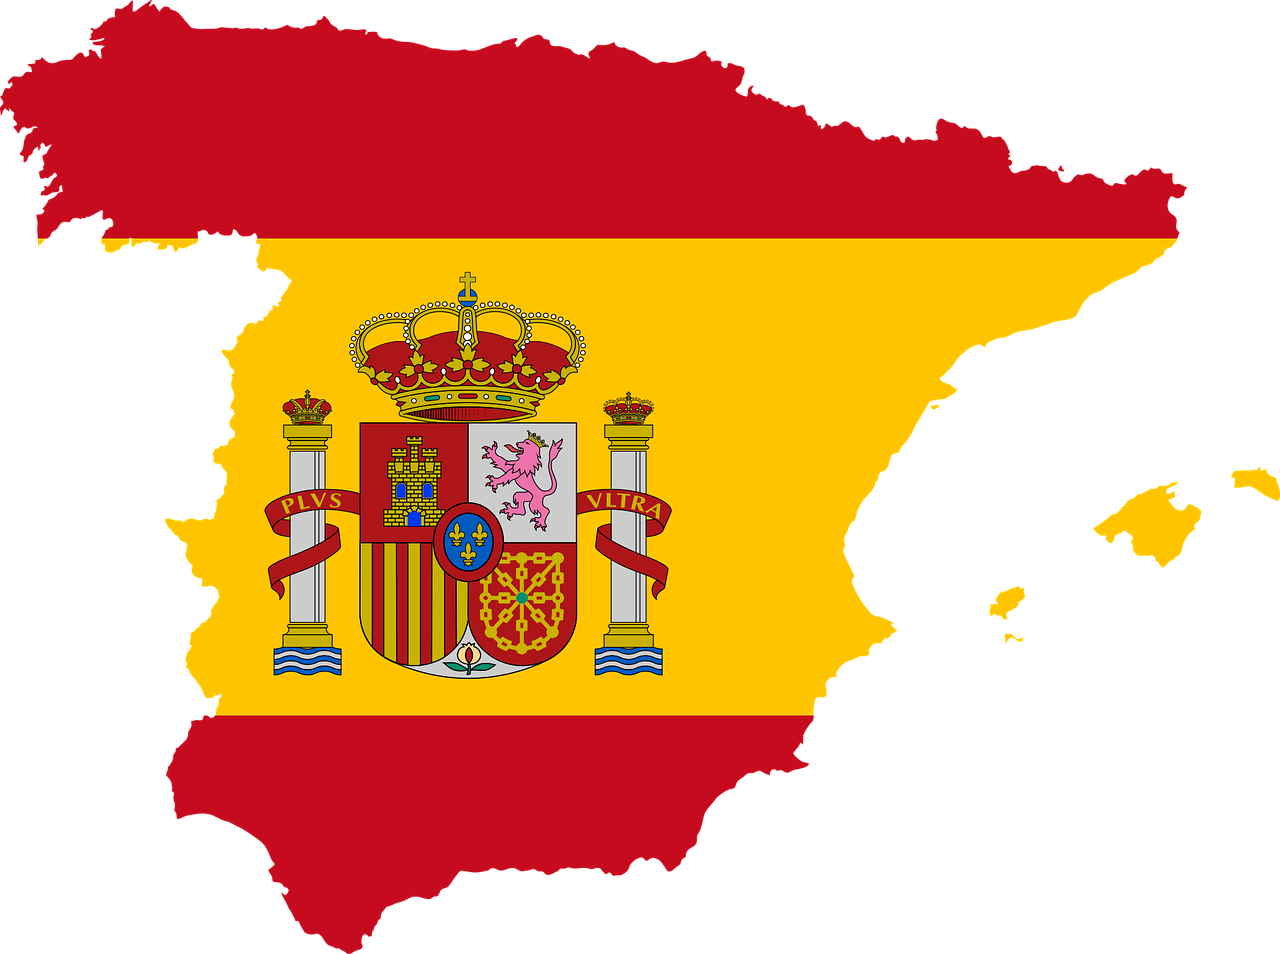 30 fondos de pantalla con la bandera de España para celebrar el día de la Hispanidad 2